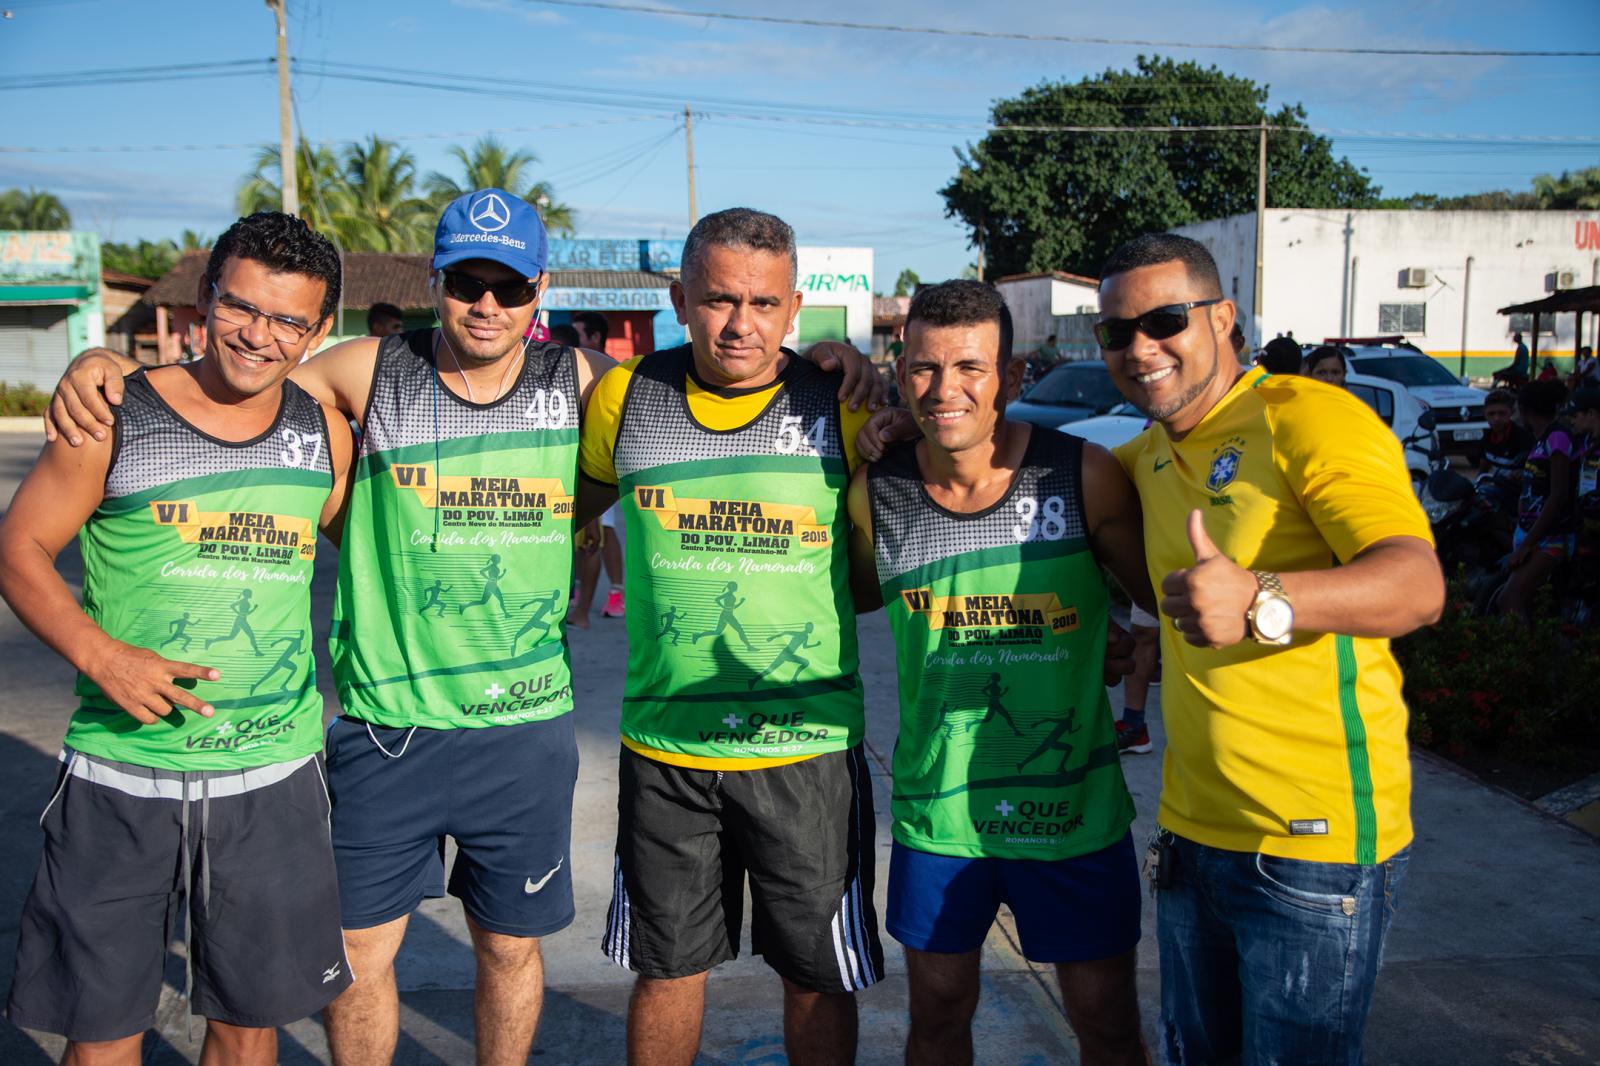 IV Meia Maratona do Povoado Limão renova esperanças para o esporte centronovense